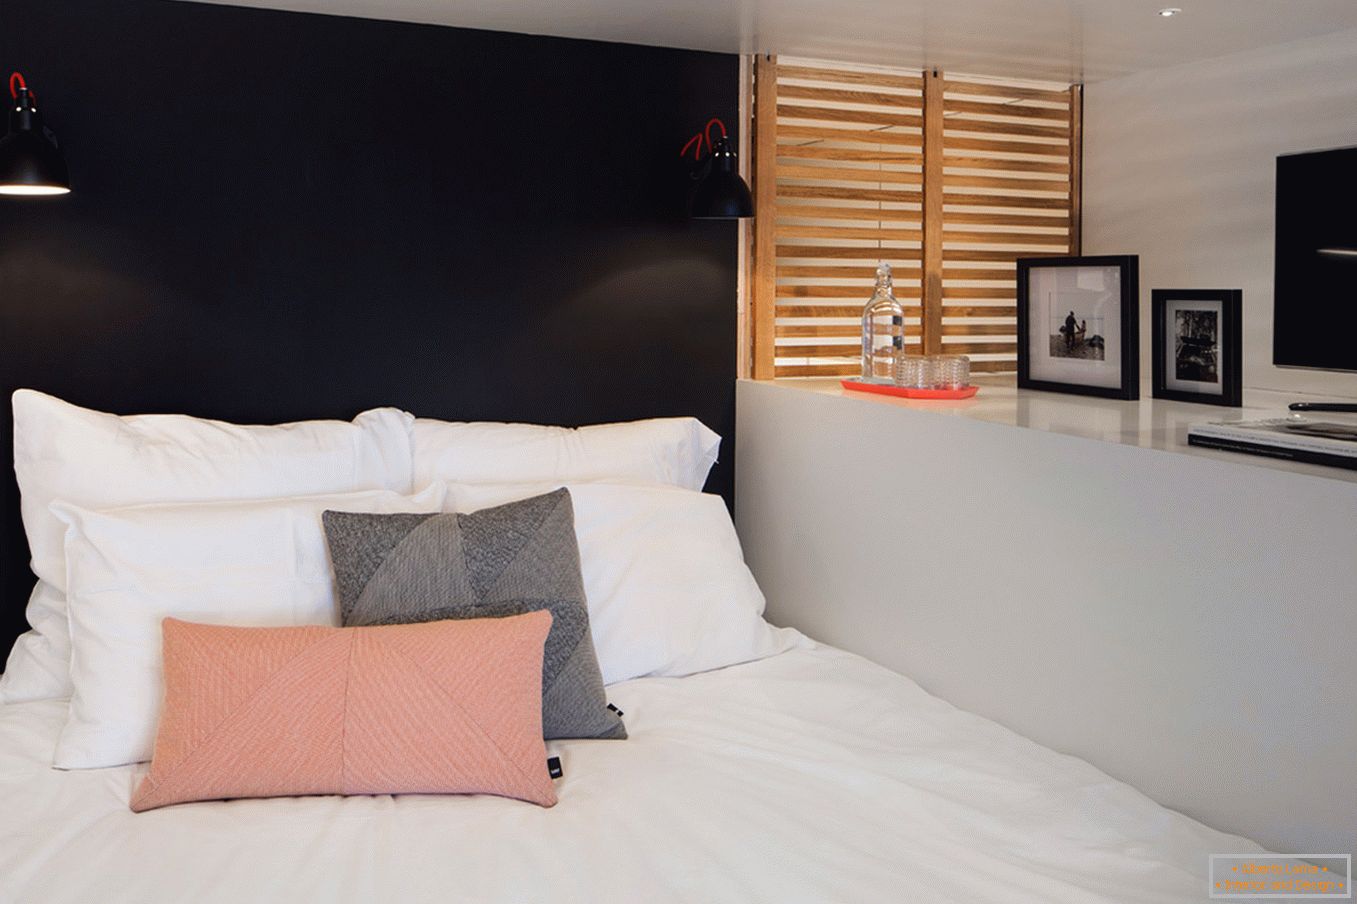 Camera da letto dietro un reticolo di legno